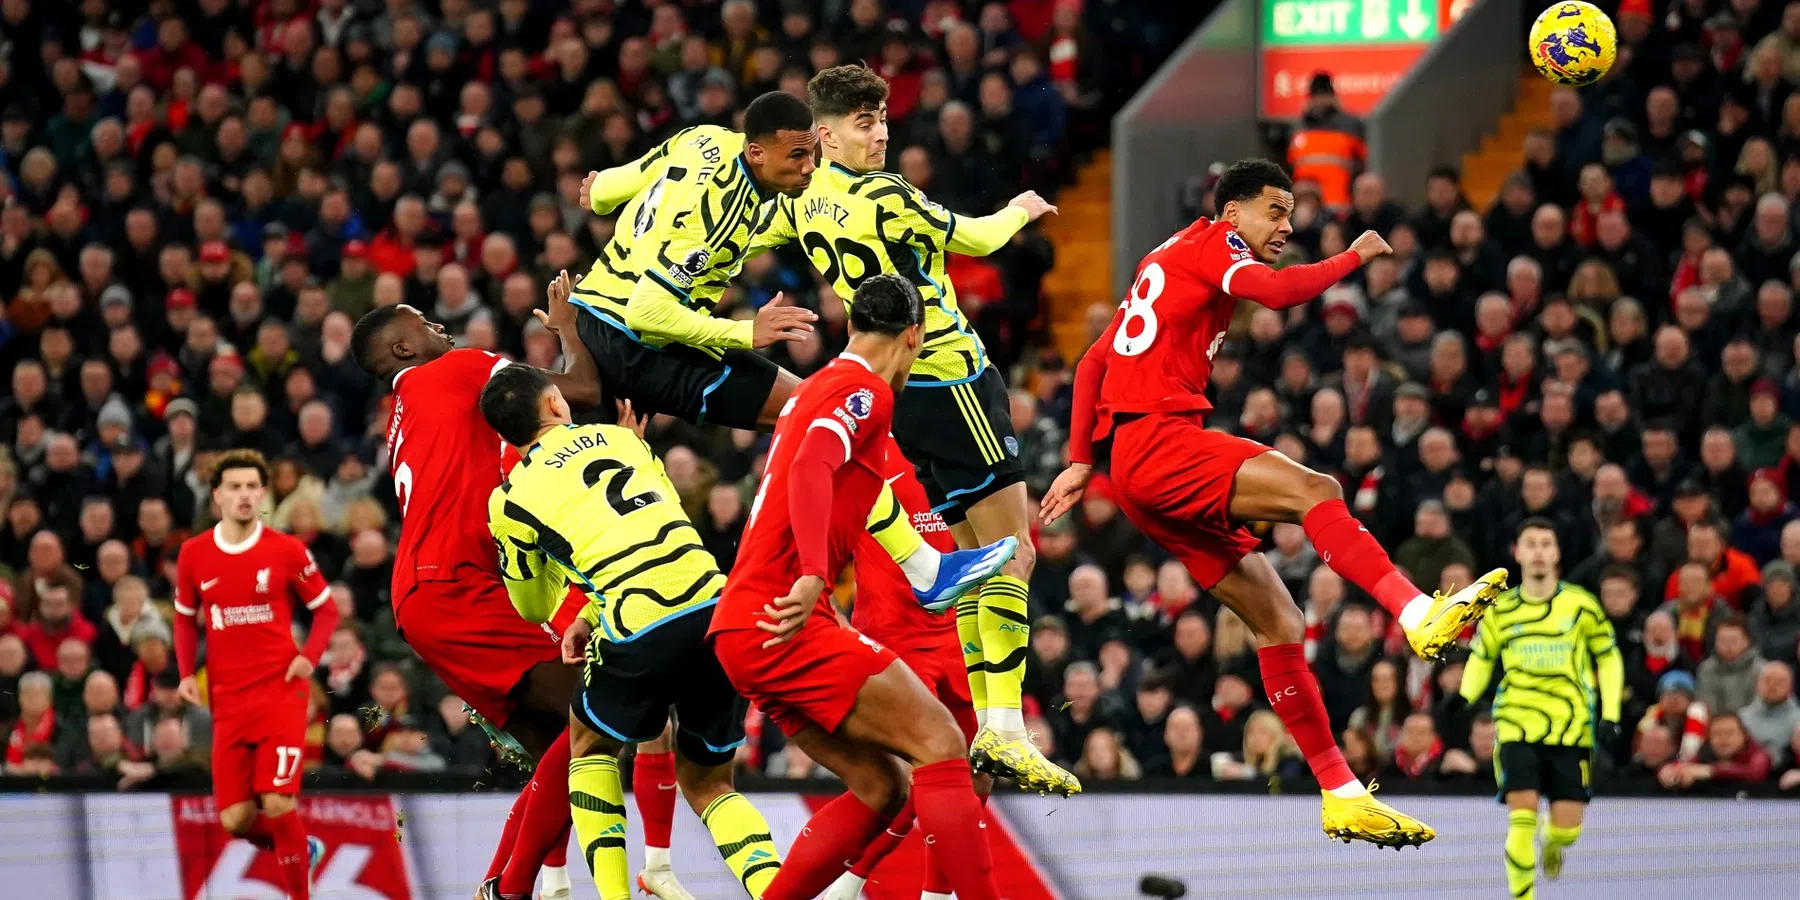 Liverpool en Arsenal houden elkaar in evenwicht in waar spektakelstuk